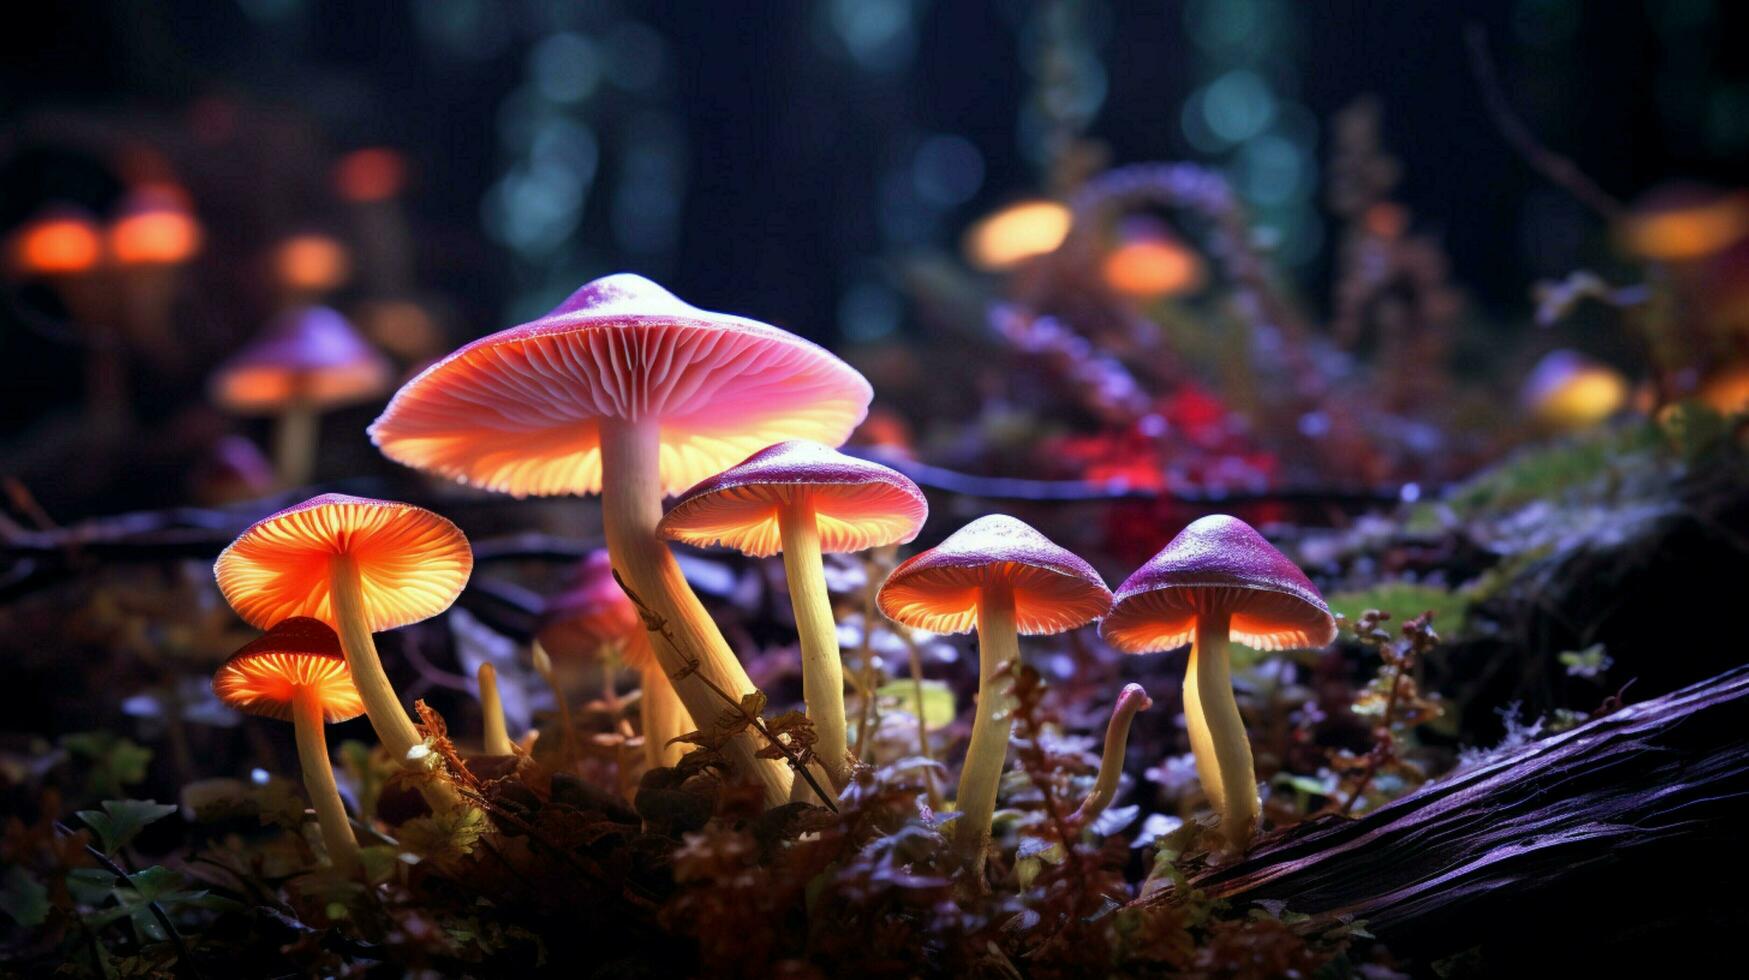 lumineux rétro-éclairé embrasé forêt champignon néon lumière photo